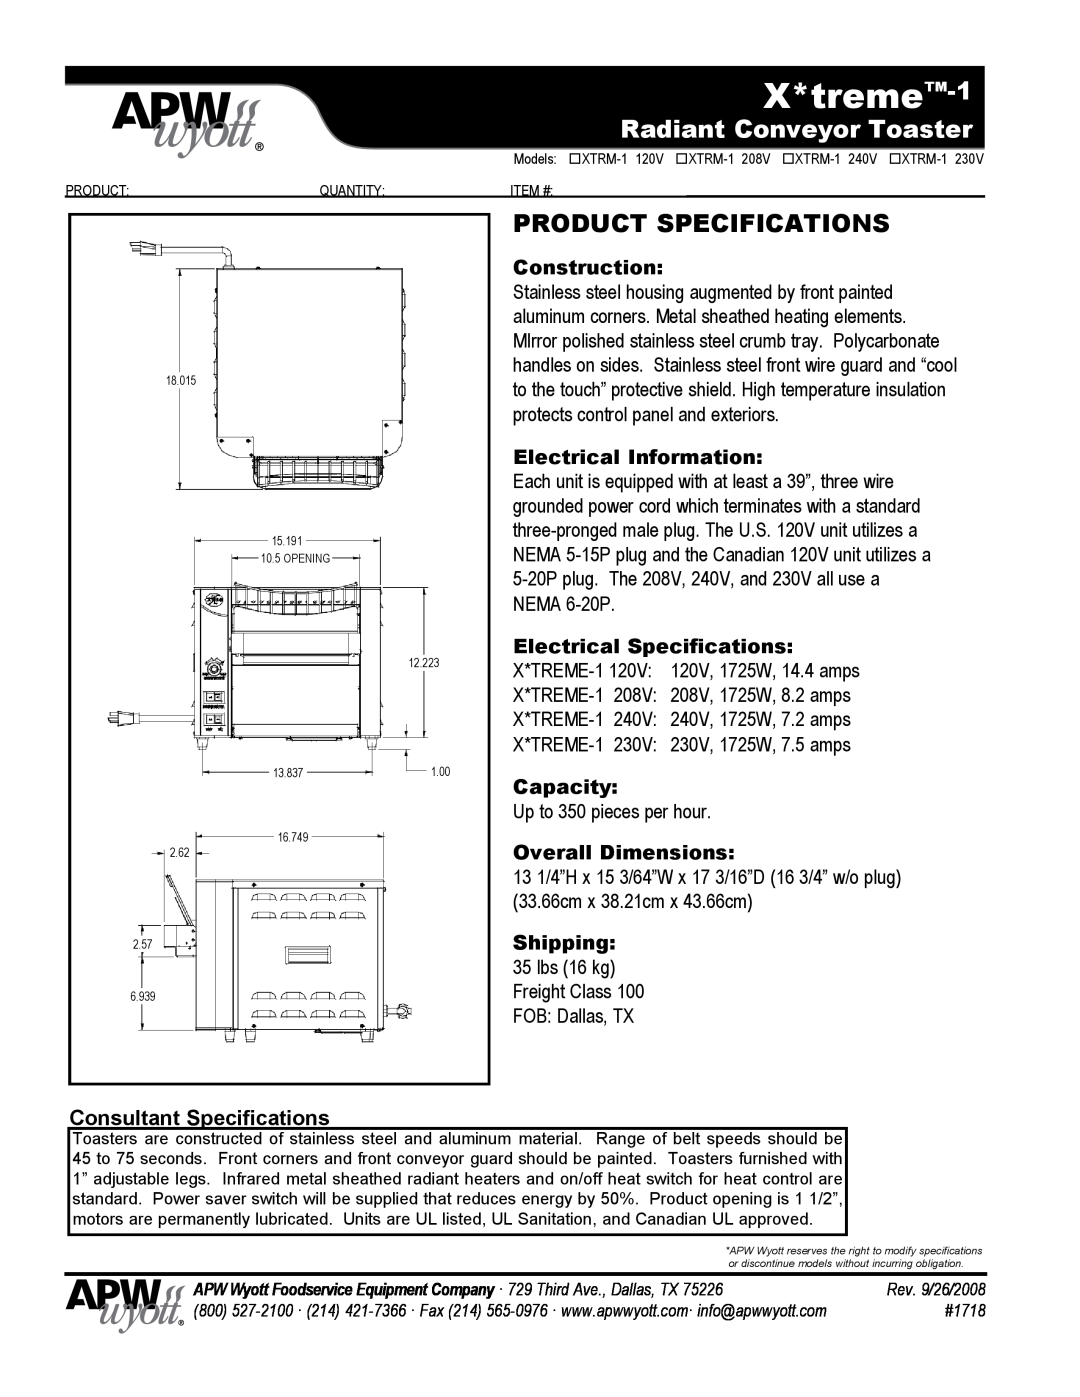 APW Wyott XTRM-1 208V Product Specifications, Construction, Electrical Information, Electrical Specifications, Capacity 